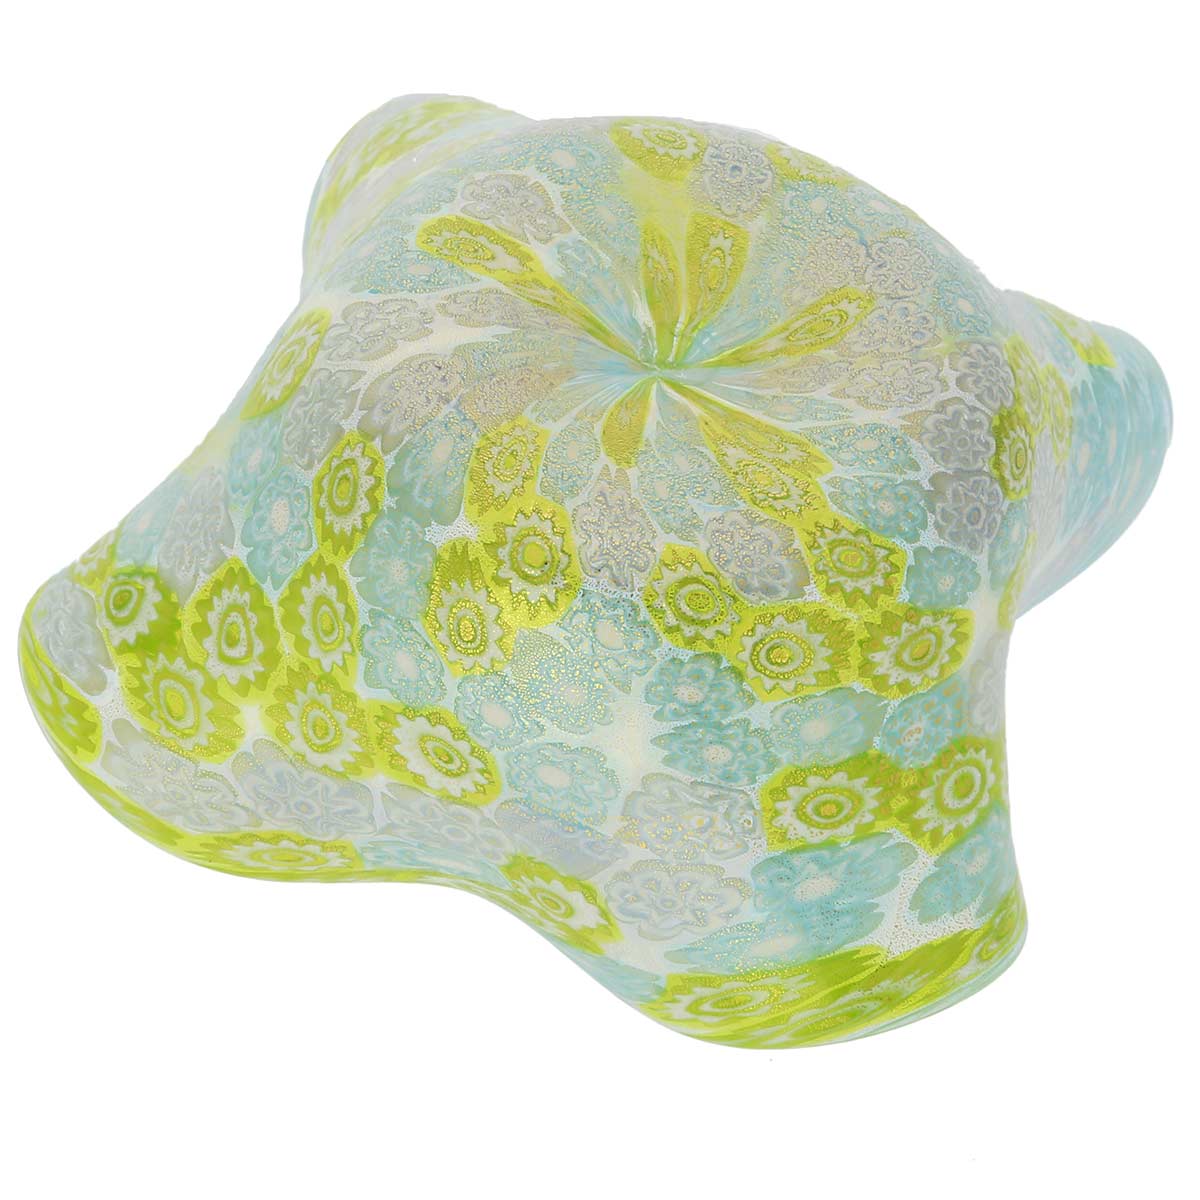 Murano Millefiori Decorative Bowl - Aqua Green